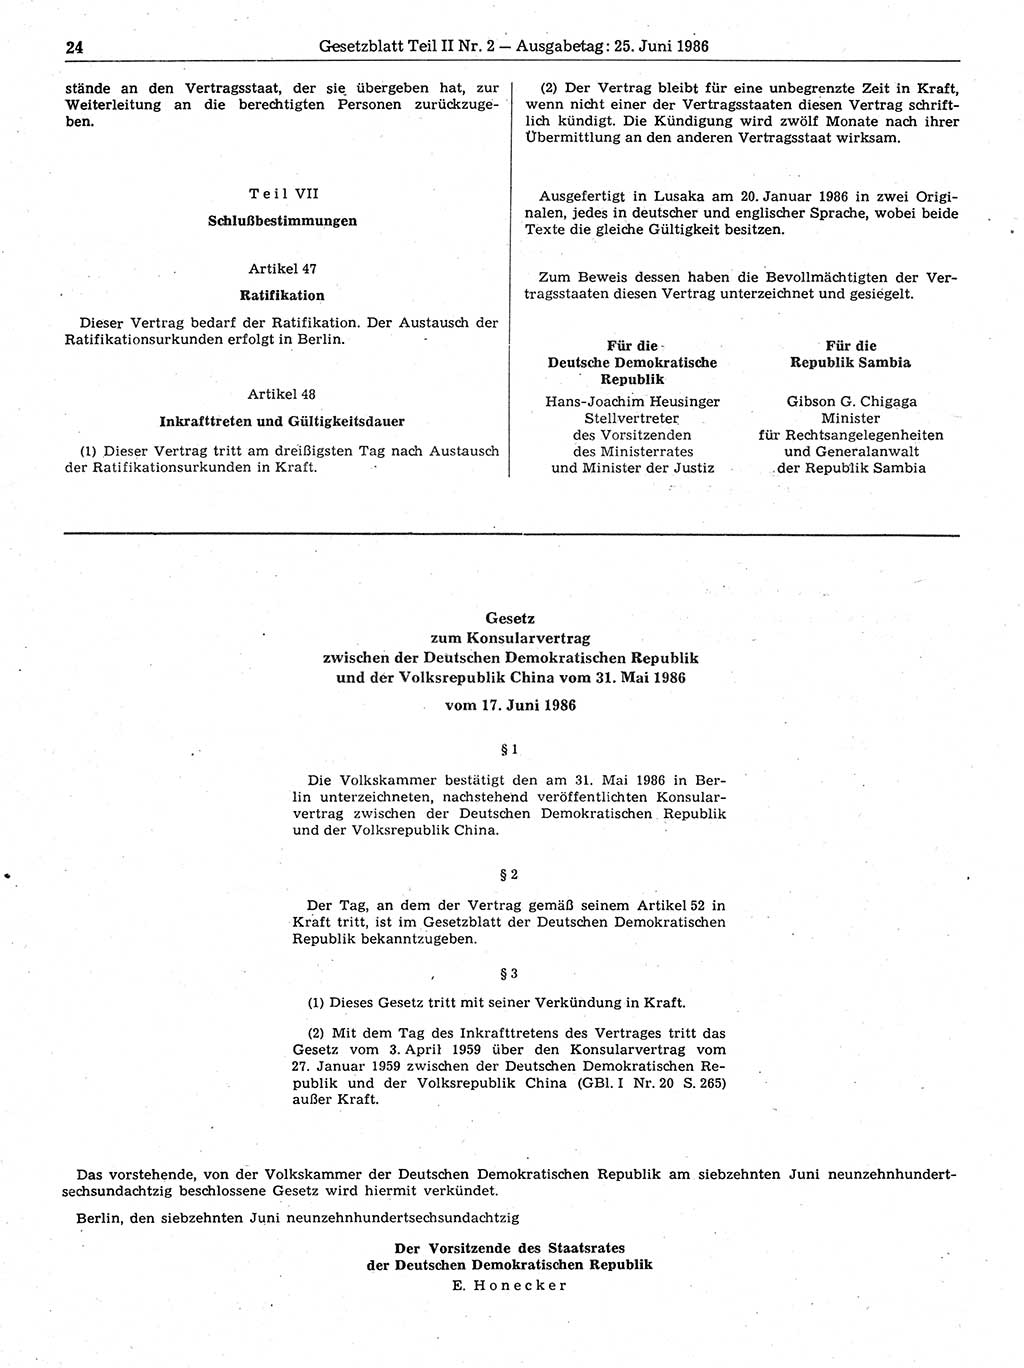 Gesetzblatt (GBl.) der Deutschen Demokratischen Republik (DDR) Teil ⅠⅠ 1986, Seite 24 (GBl. DDR ⅠⅠ 1986, S. 24)